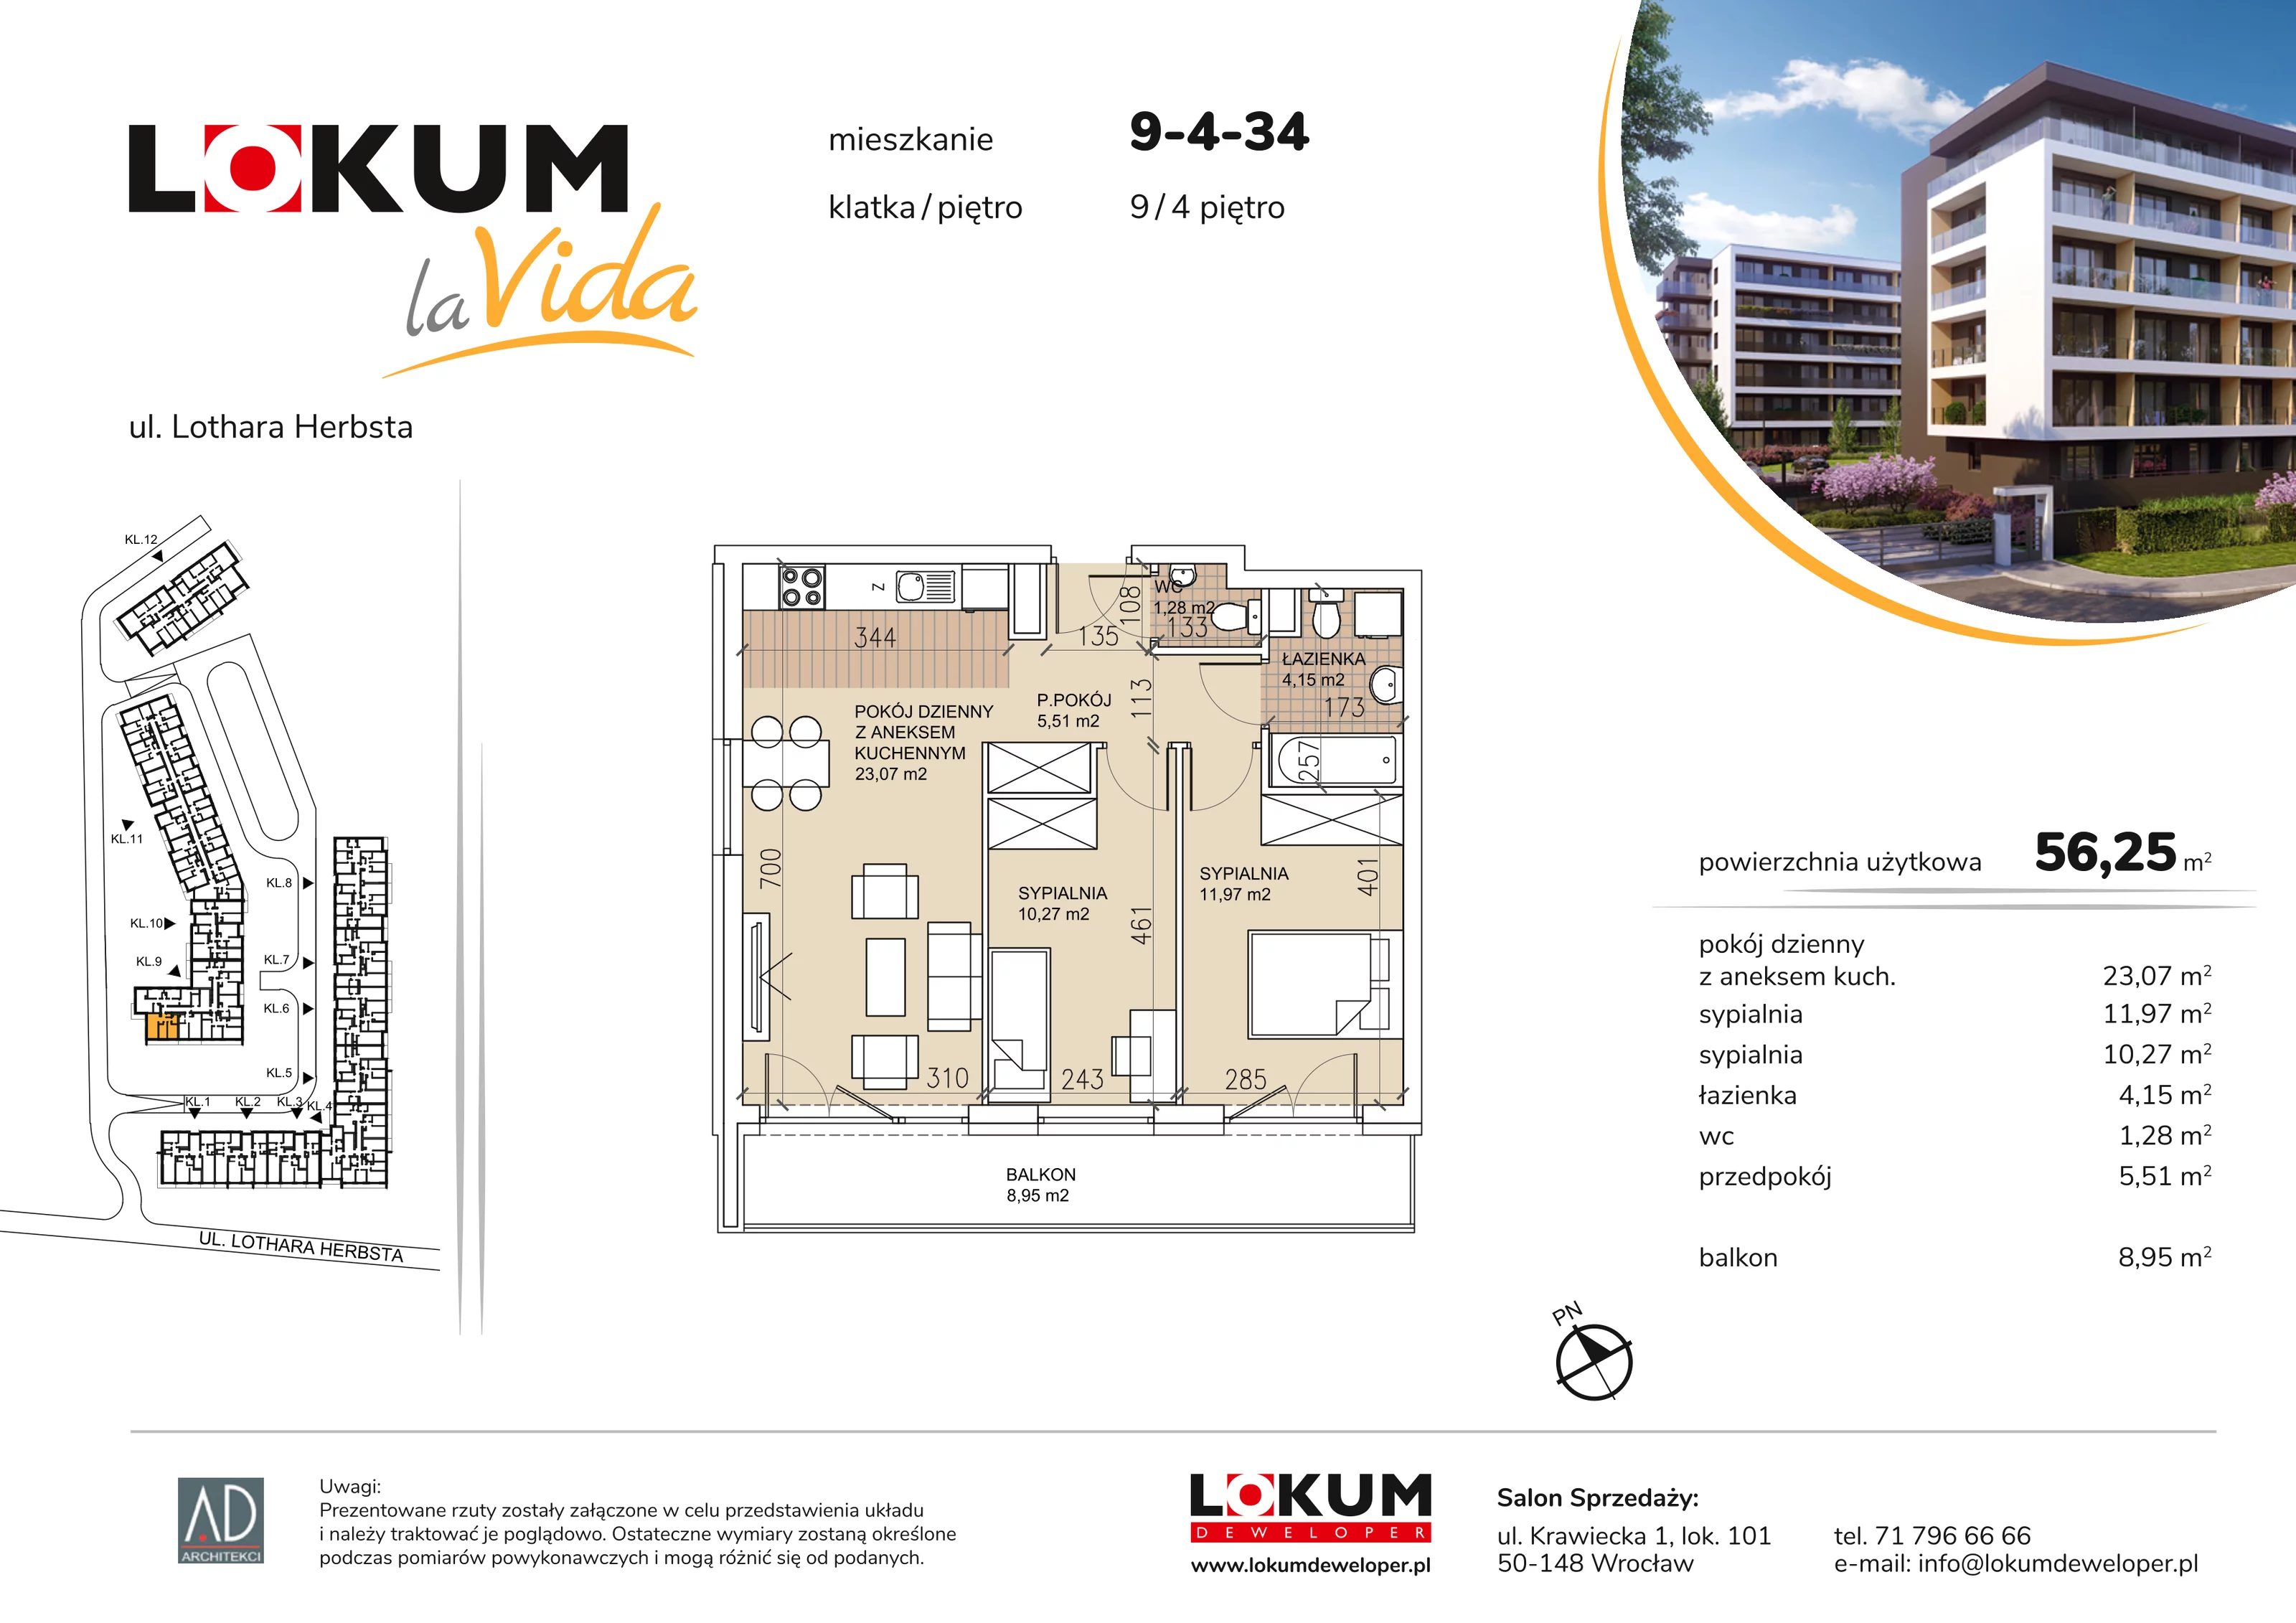 Mieszkanie 56,25 m², piętro 4, oferta nr 9-4-34, Lokum la Vida, Wrocław, Sołtysowice, ul. Lothara Herbsta